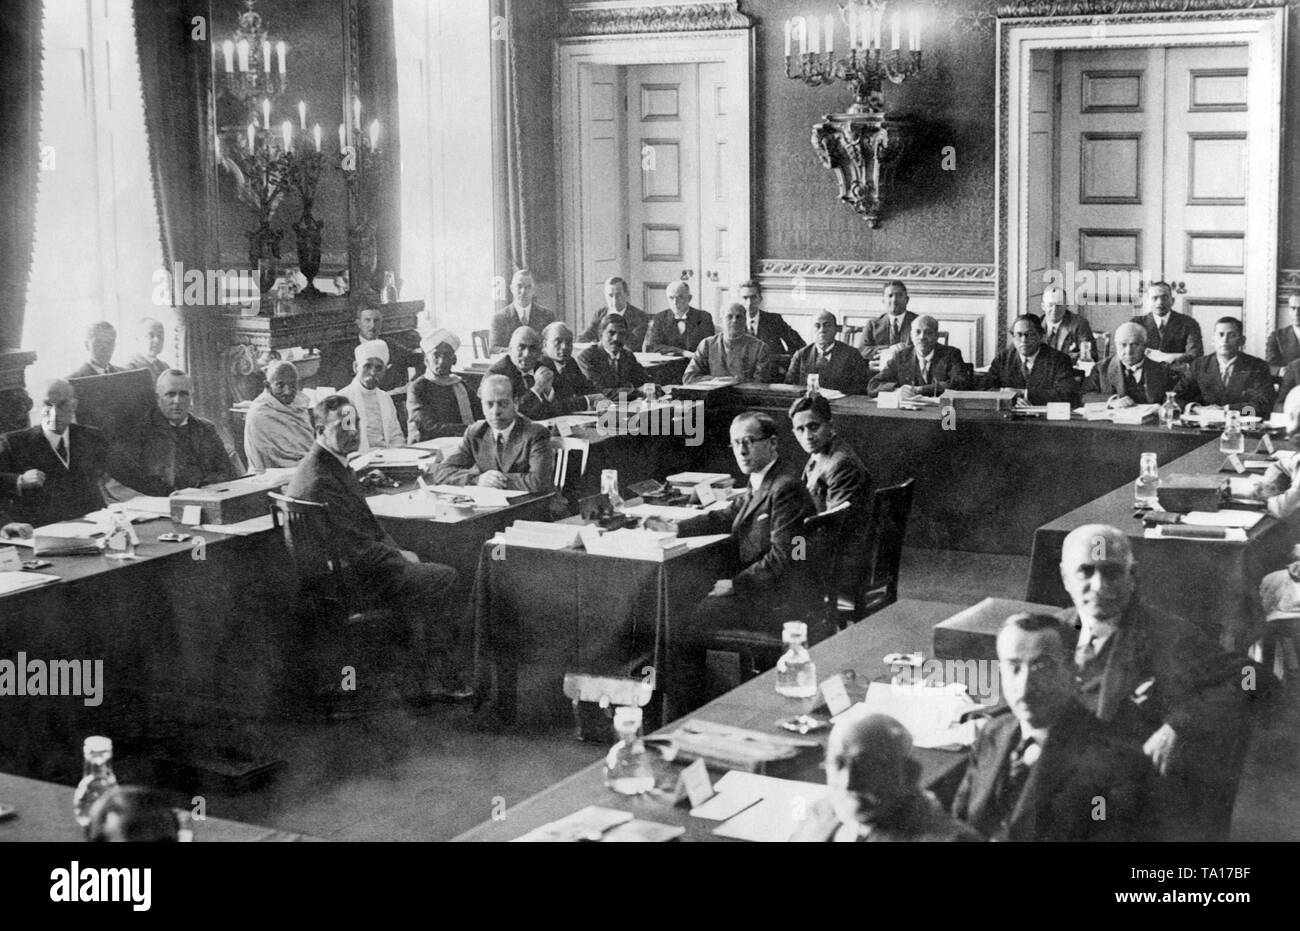 Cette photo montre la table ronde indiennes Conférence à St. James's Palace à Londres. Troisième en partant de la gauche sur la table de conférence le Mahatma Gandhi, sur la gauche à côté de lui le président Lord Sankey. Gandhi a été nommé plusieurs fois pour le prix Nobel de la paix au cours de sa vie. Banque D'Images